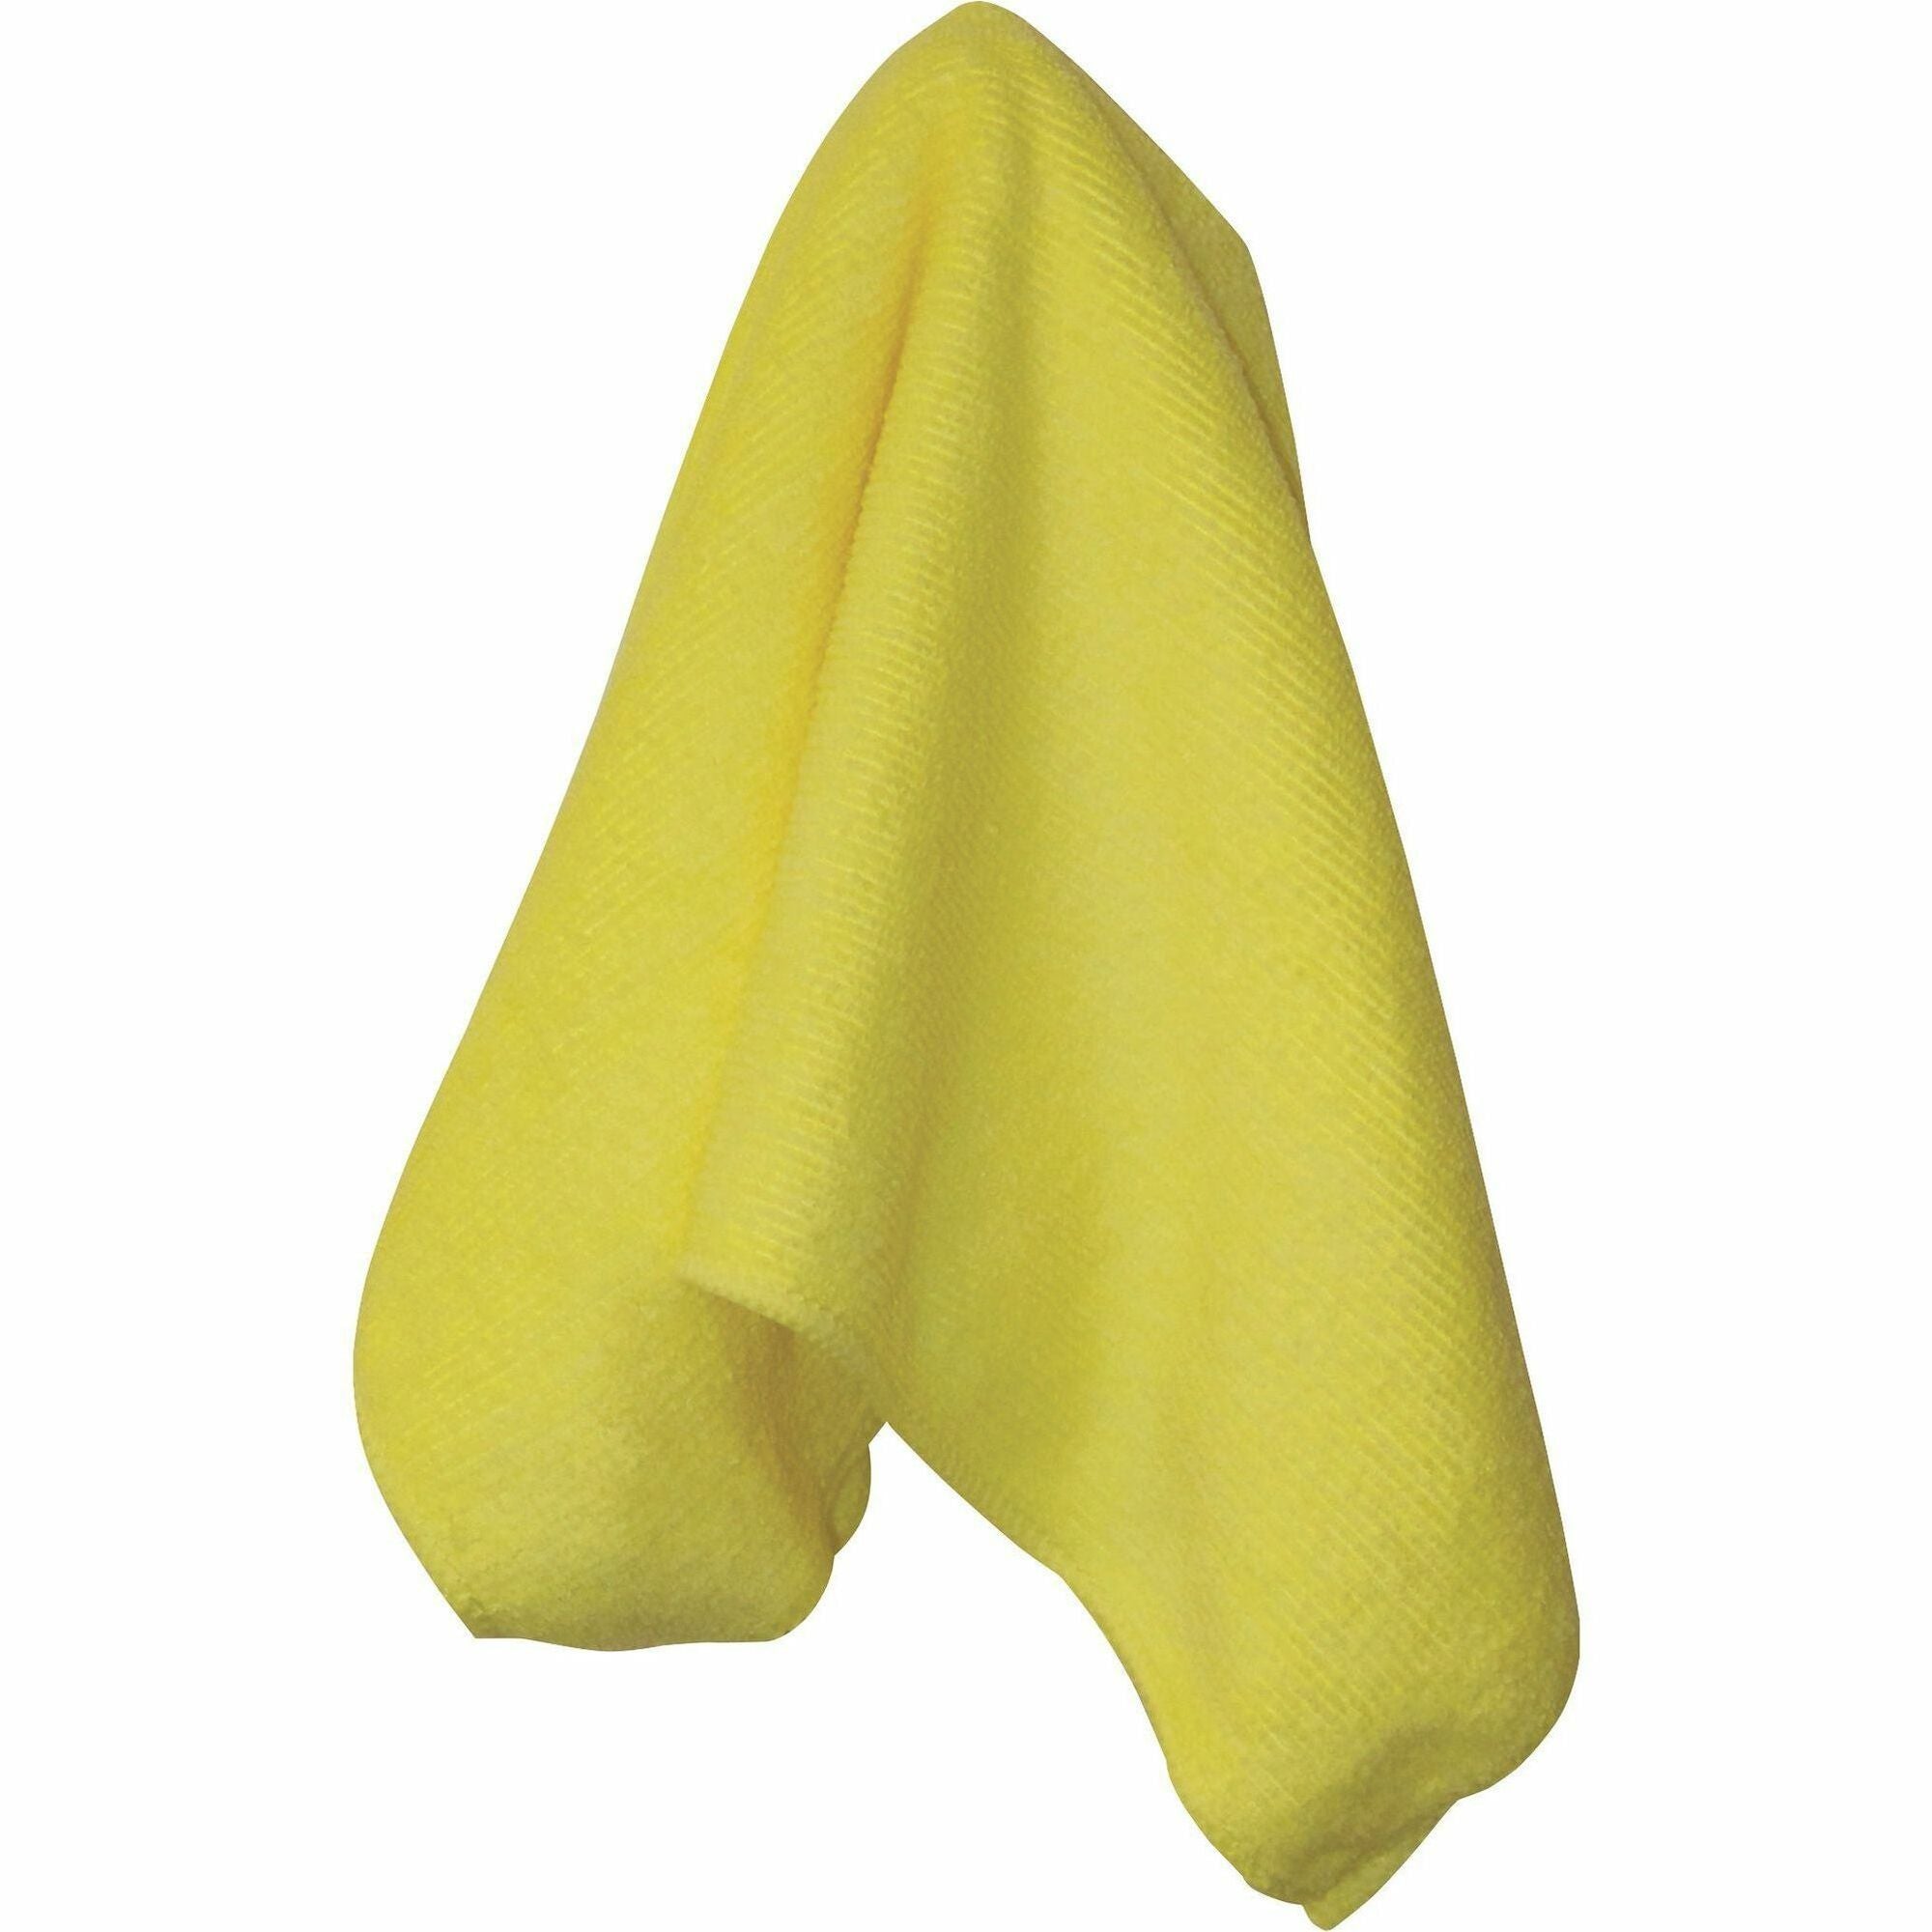 Genuine Joe General-purpose Microfiber Cloth - For General Purpose - 16" Length x 16" Width - 12 / Bag - Durable - Yellow - 